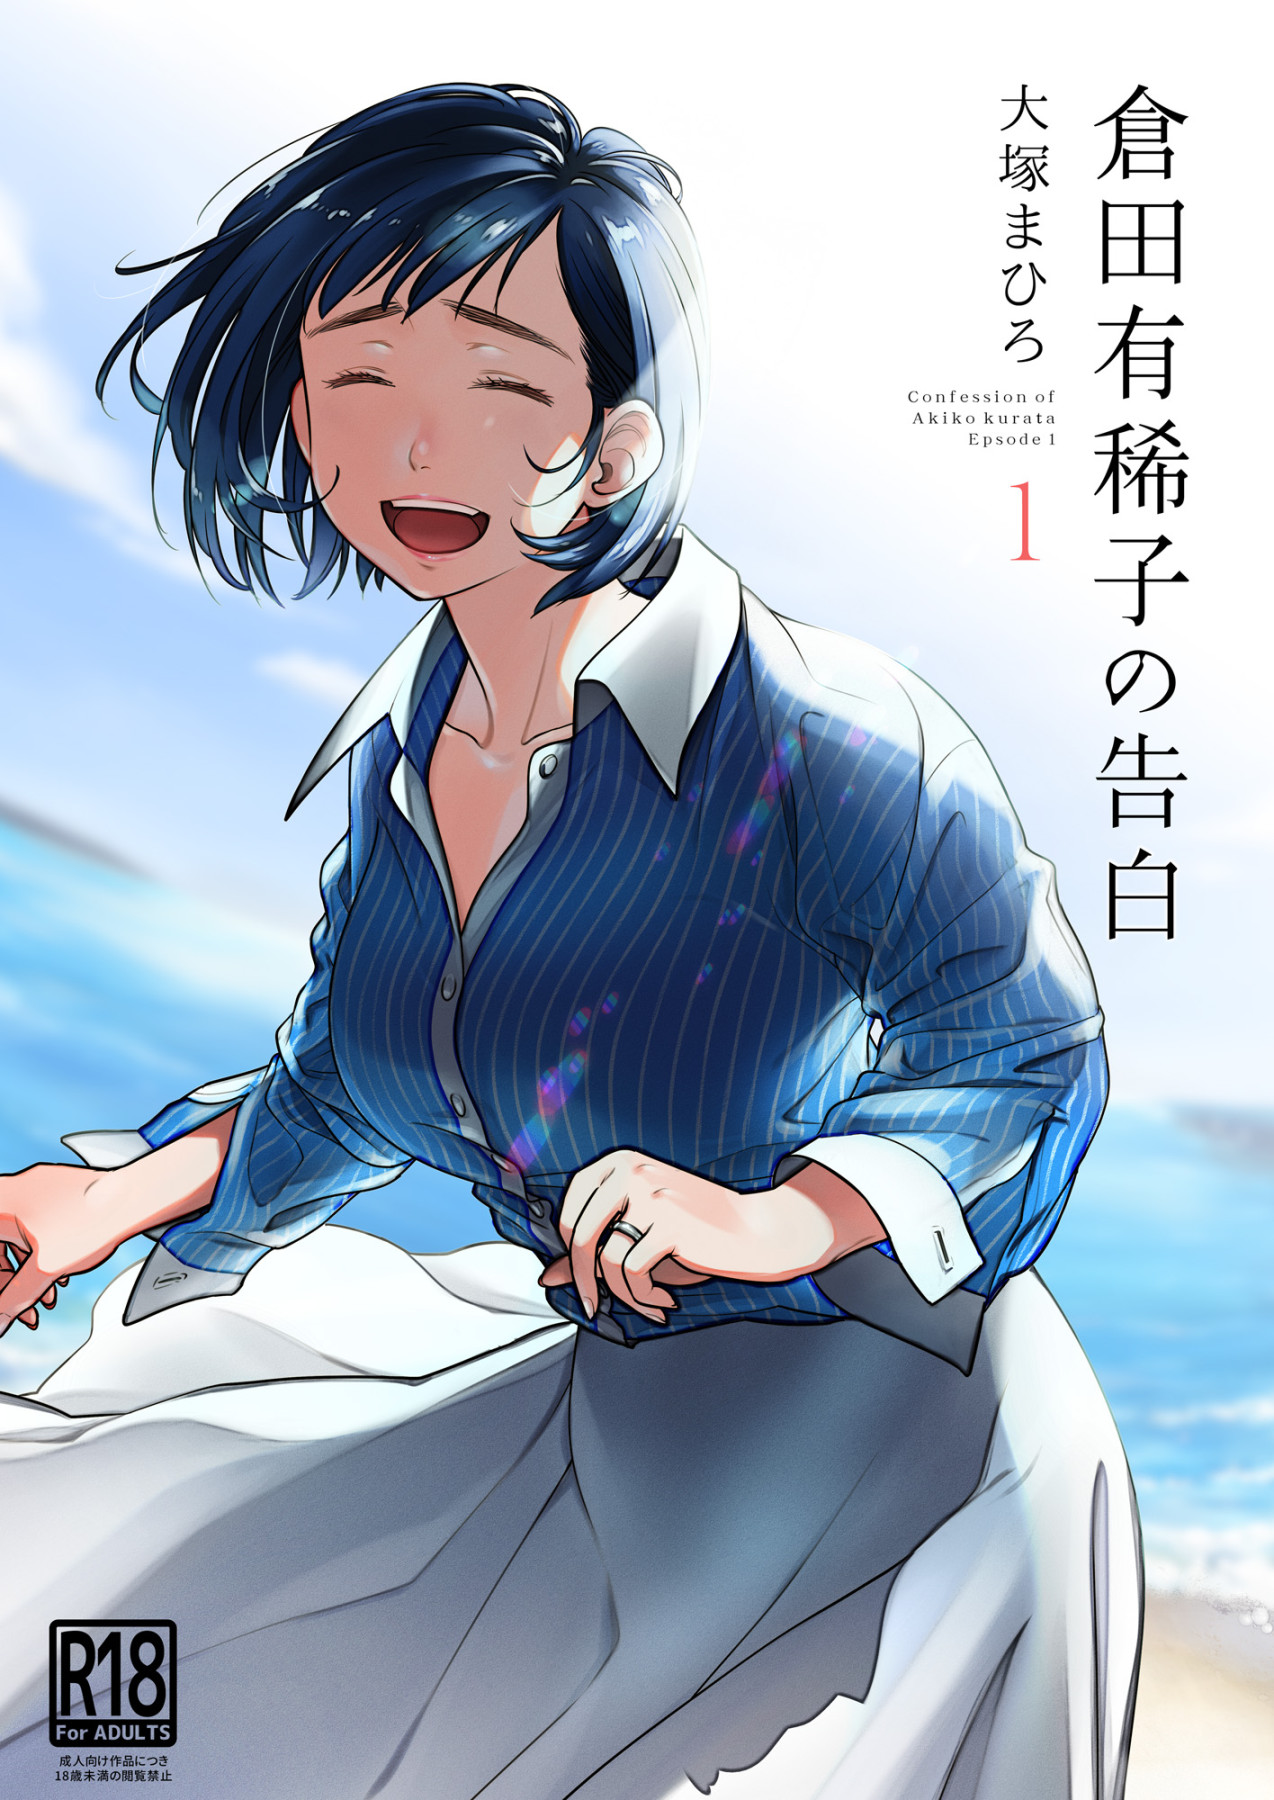 Hentai Manga Comic-Confession of Akiko kurata Epsode 1-Read-1